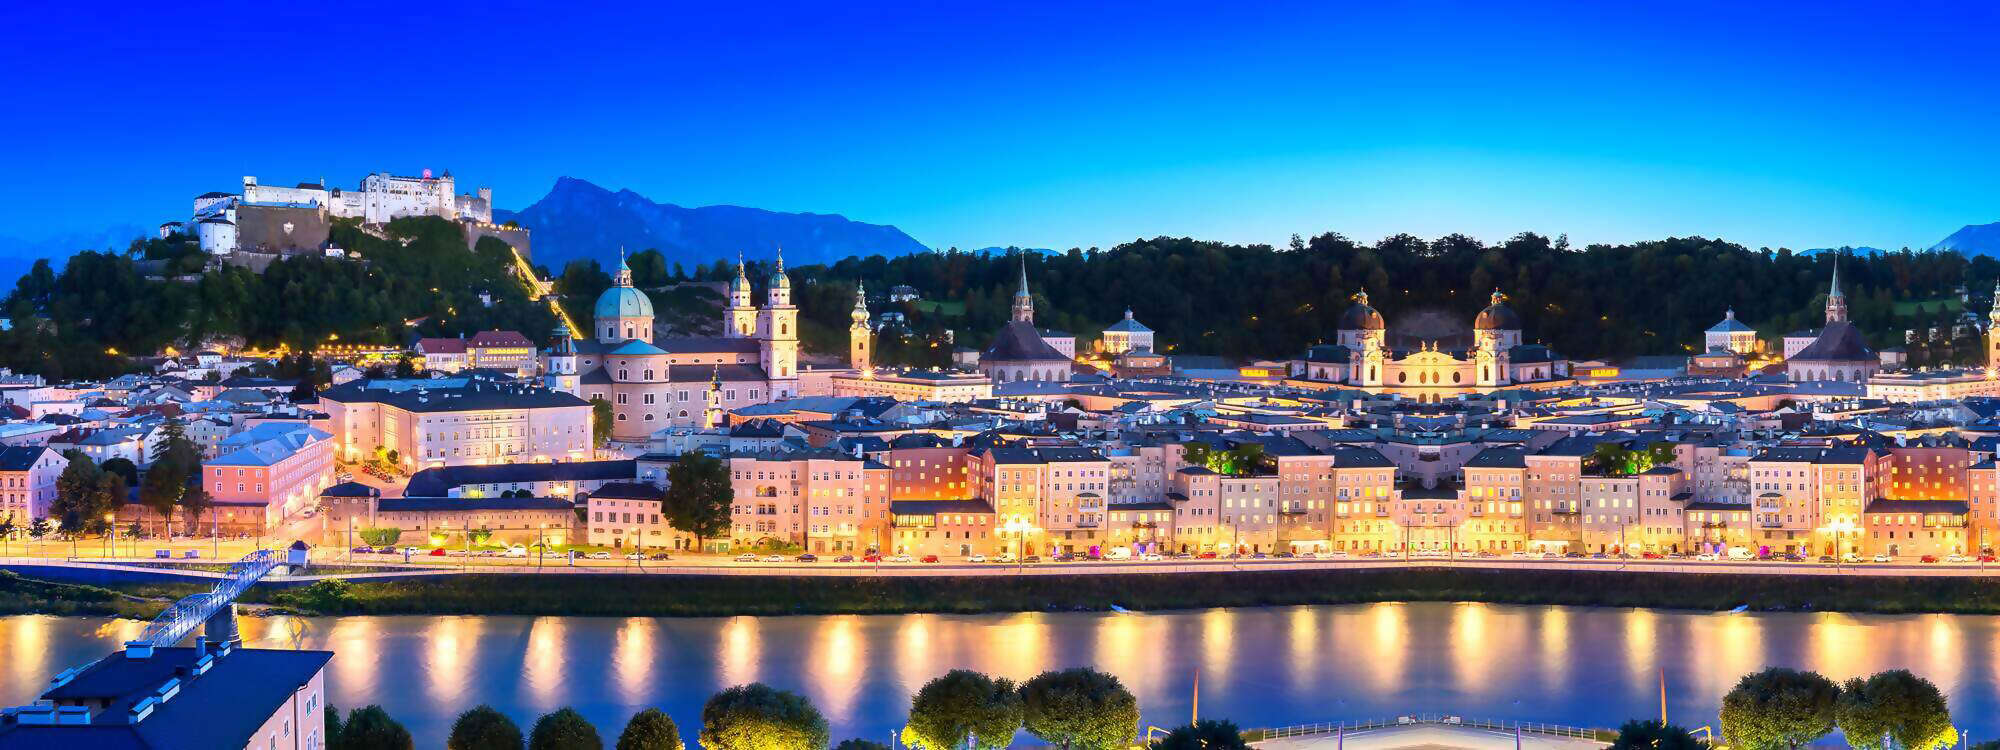 Die Stadt Salzburg am Abend mit der Festung Hohen Salzburg im Hintergrund